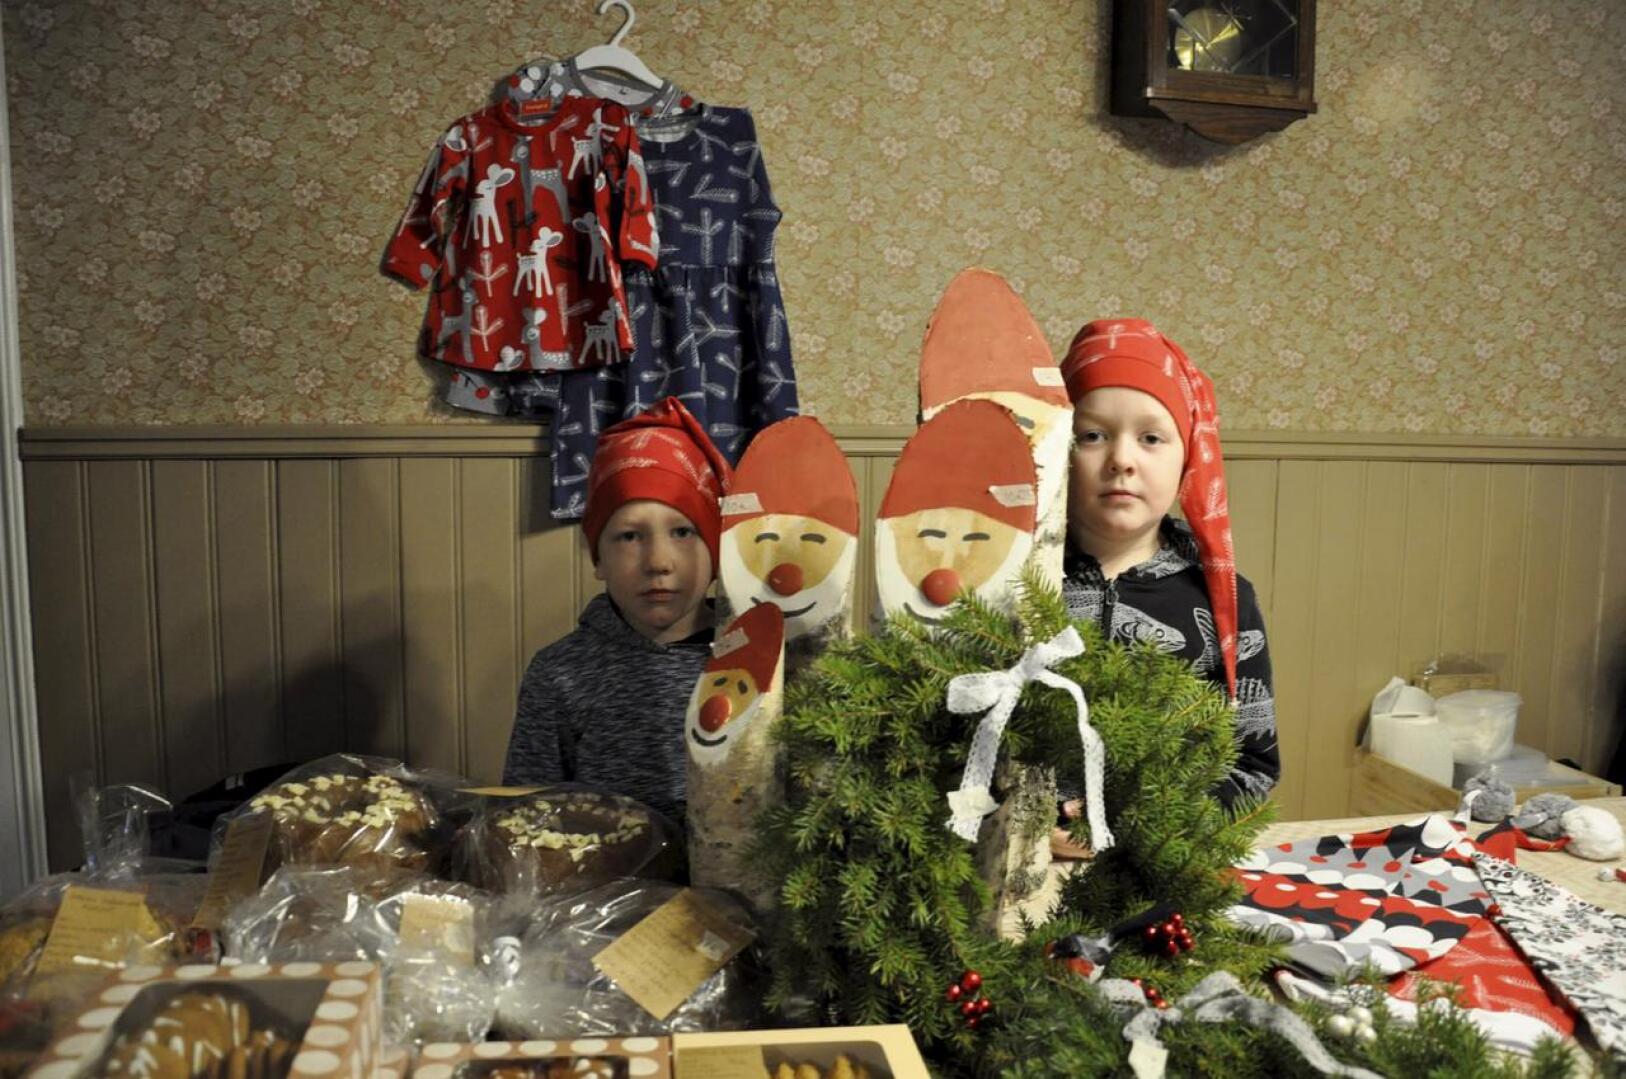 Tonttutehtailijat. Arttu, 6, ja Elmeri, 8, Tuikkanen ovat tehneet puusta tonttuja yhdessä isän kanssa. He myivät niitä Pajamäen Käsintehty -joulumyyjäisissä.